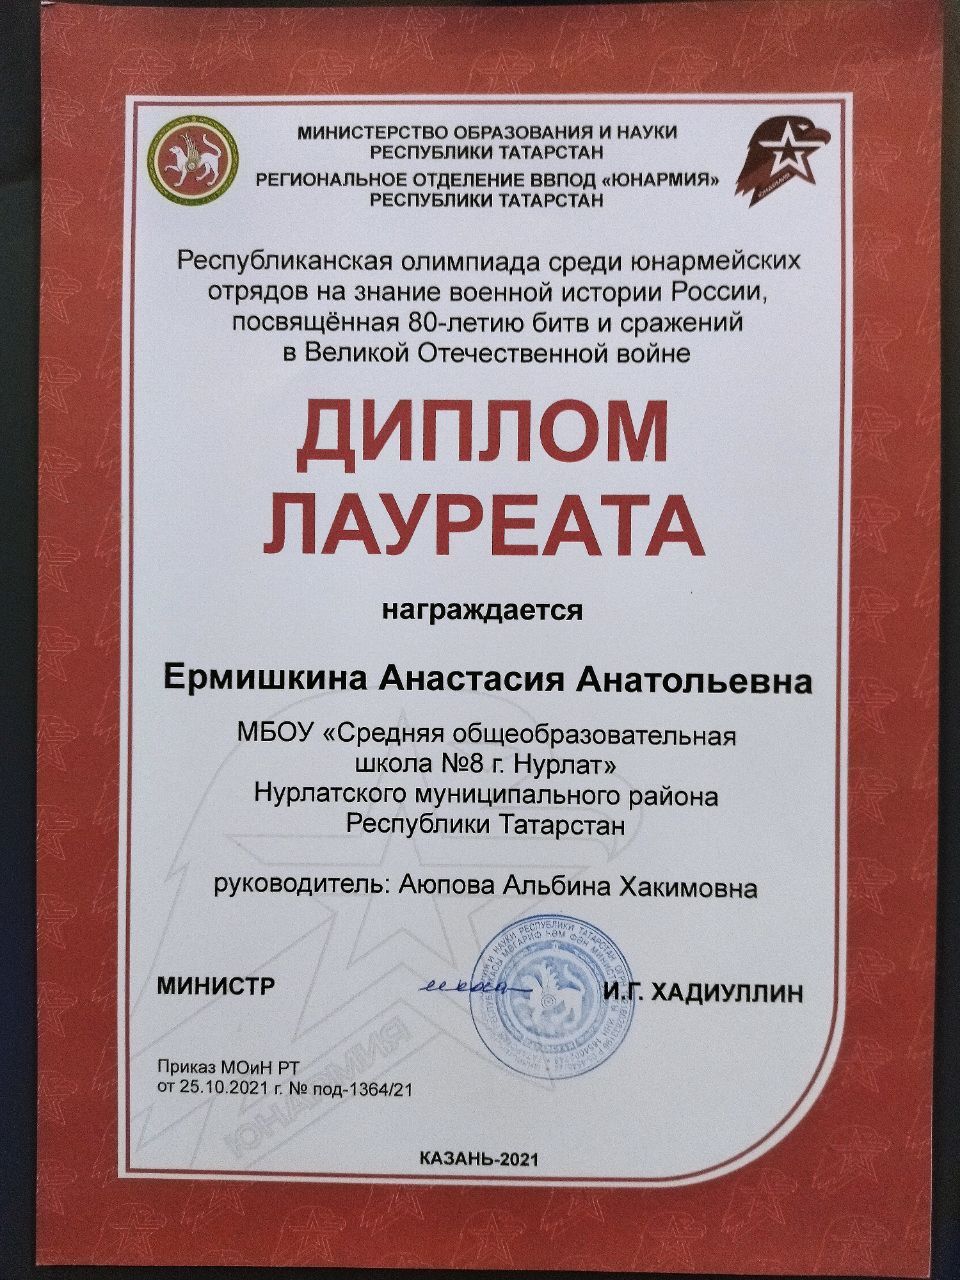 Нурлатцы приняли участие в слете регионального отделения ВВПОД «Юнармия» РТ